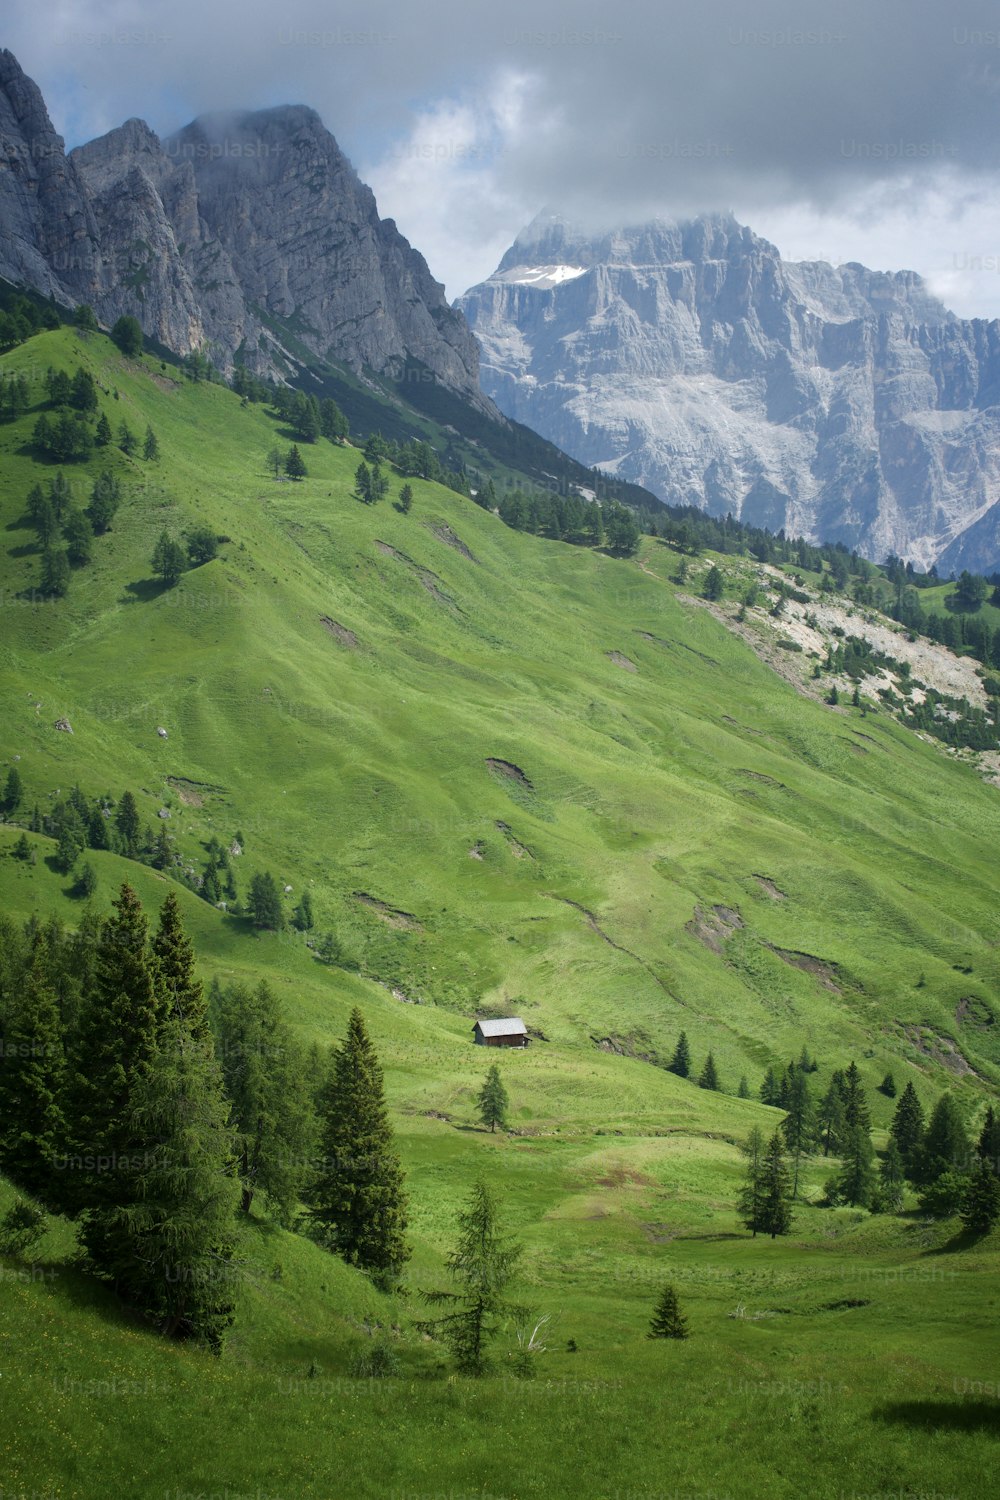 중앙에 집이 있는 무성한 녹색 언덕